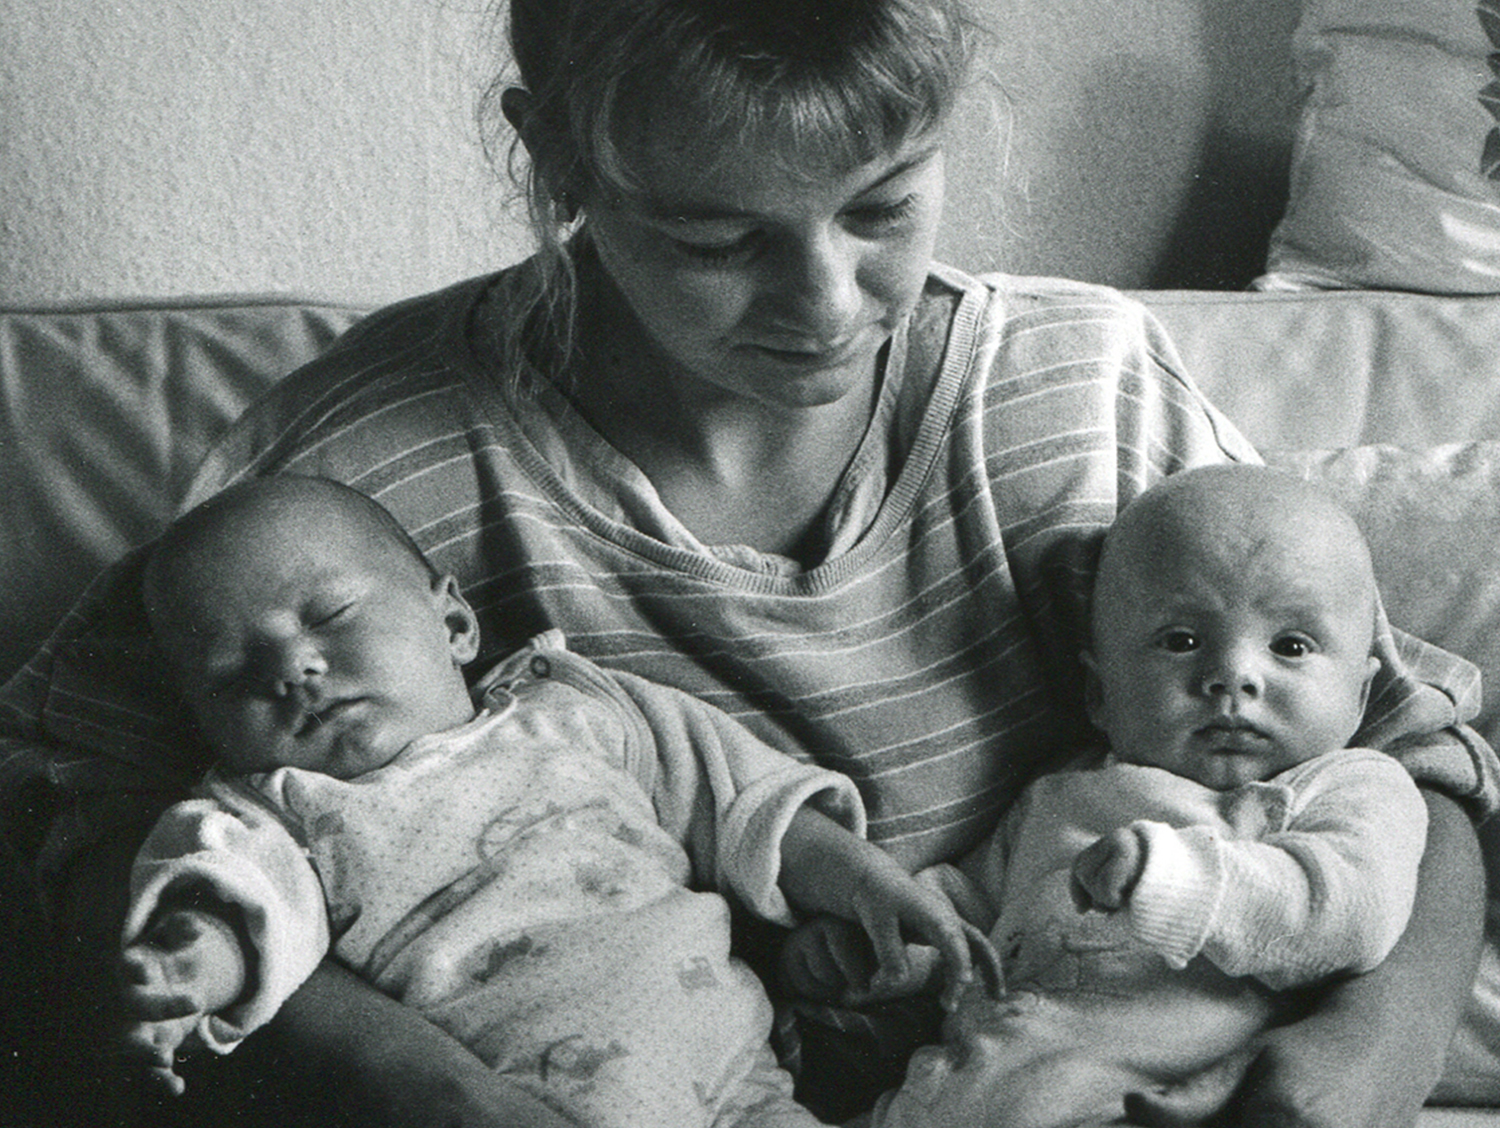 Eine junge Frau sitzt auf dem Sofa und hält zwei Babies in den Armen, ein baby schaut mit offenen Augen direkt in die Kamera, anderes Baby hat Augen zu.